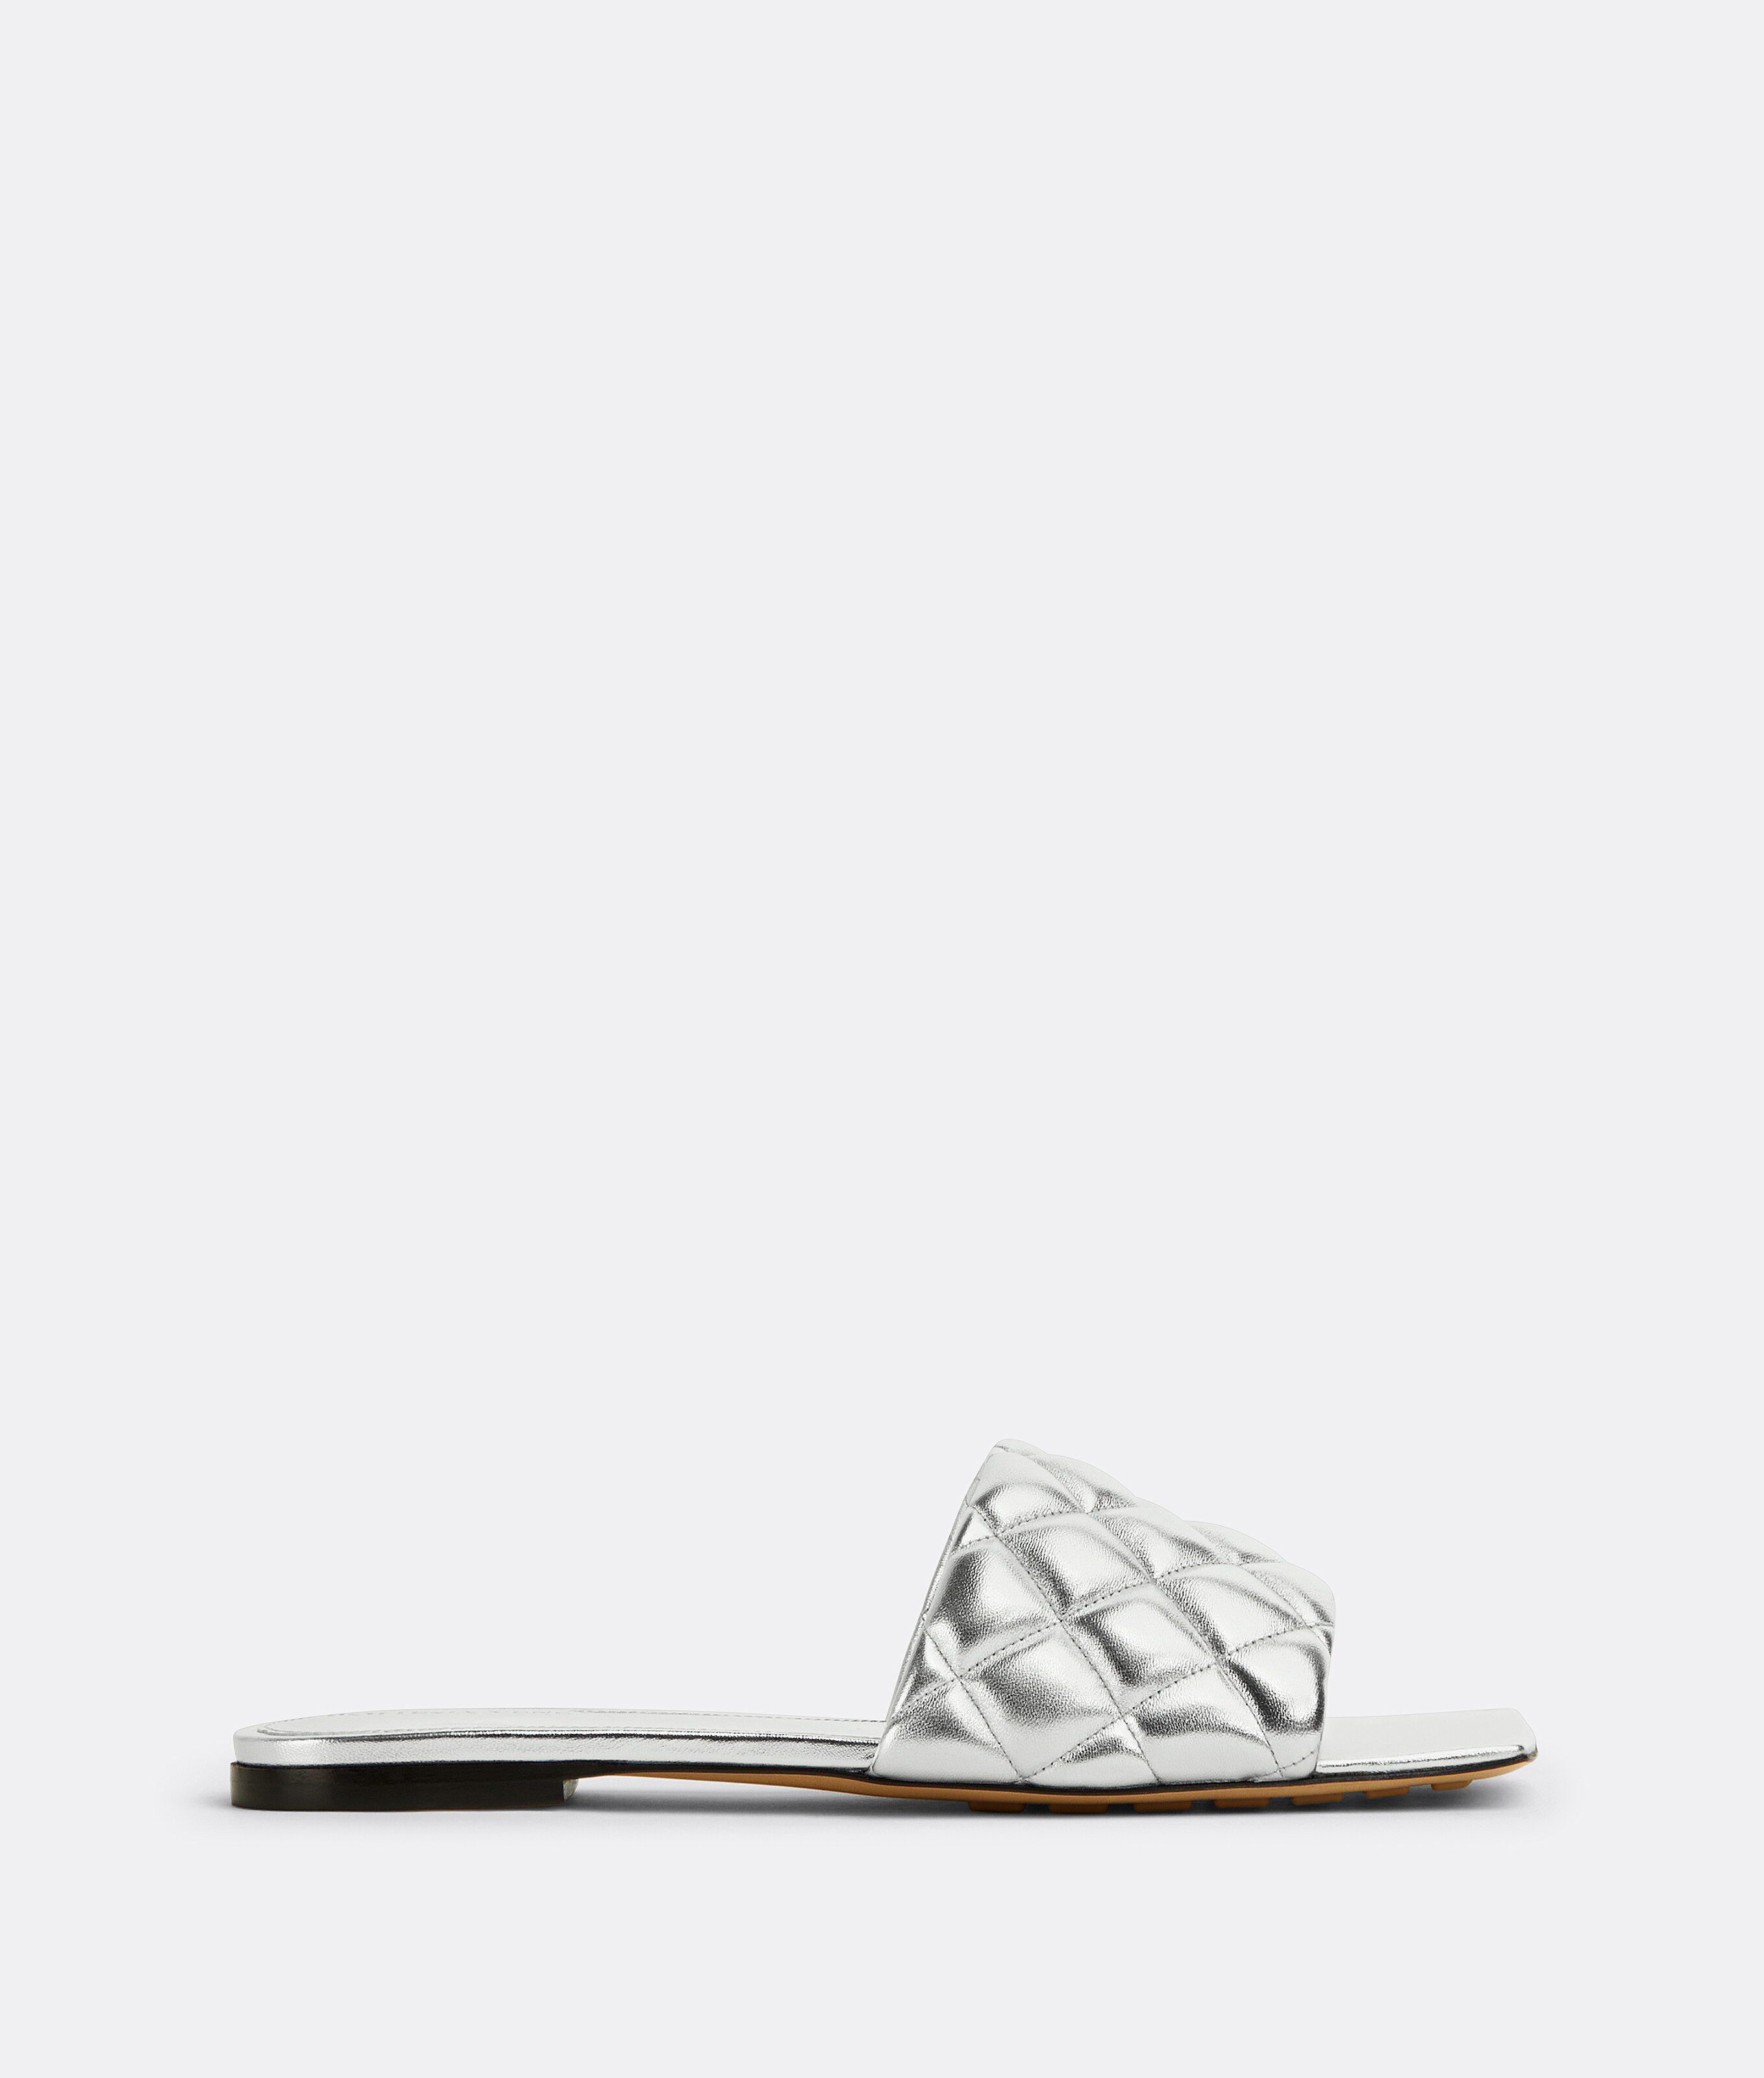 パデッドフラットサンダル ホワイト 36.5 - 靴